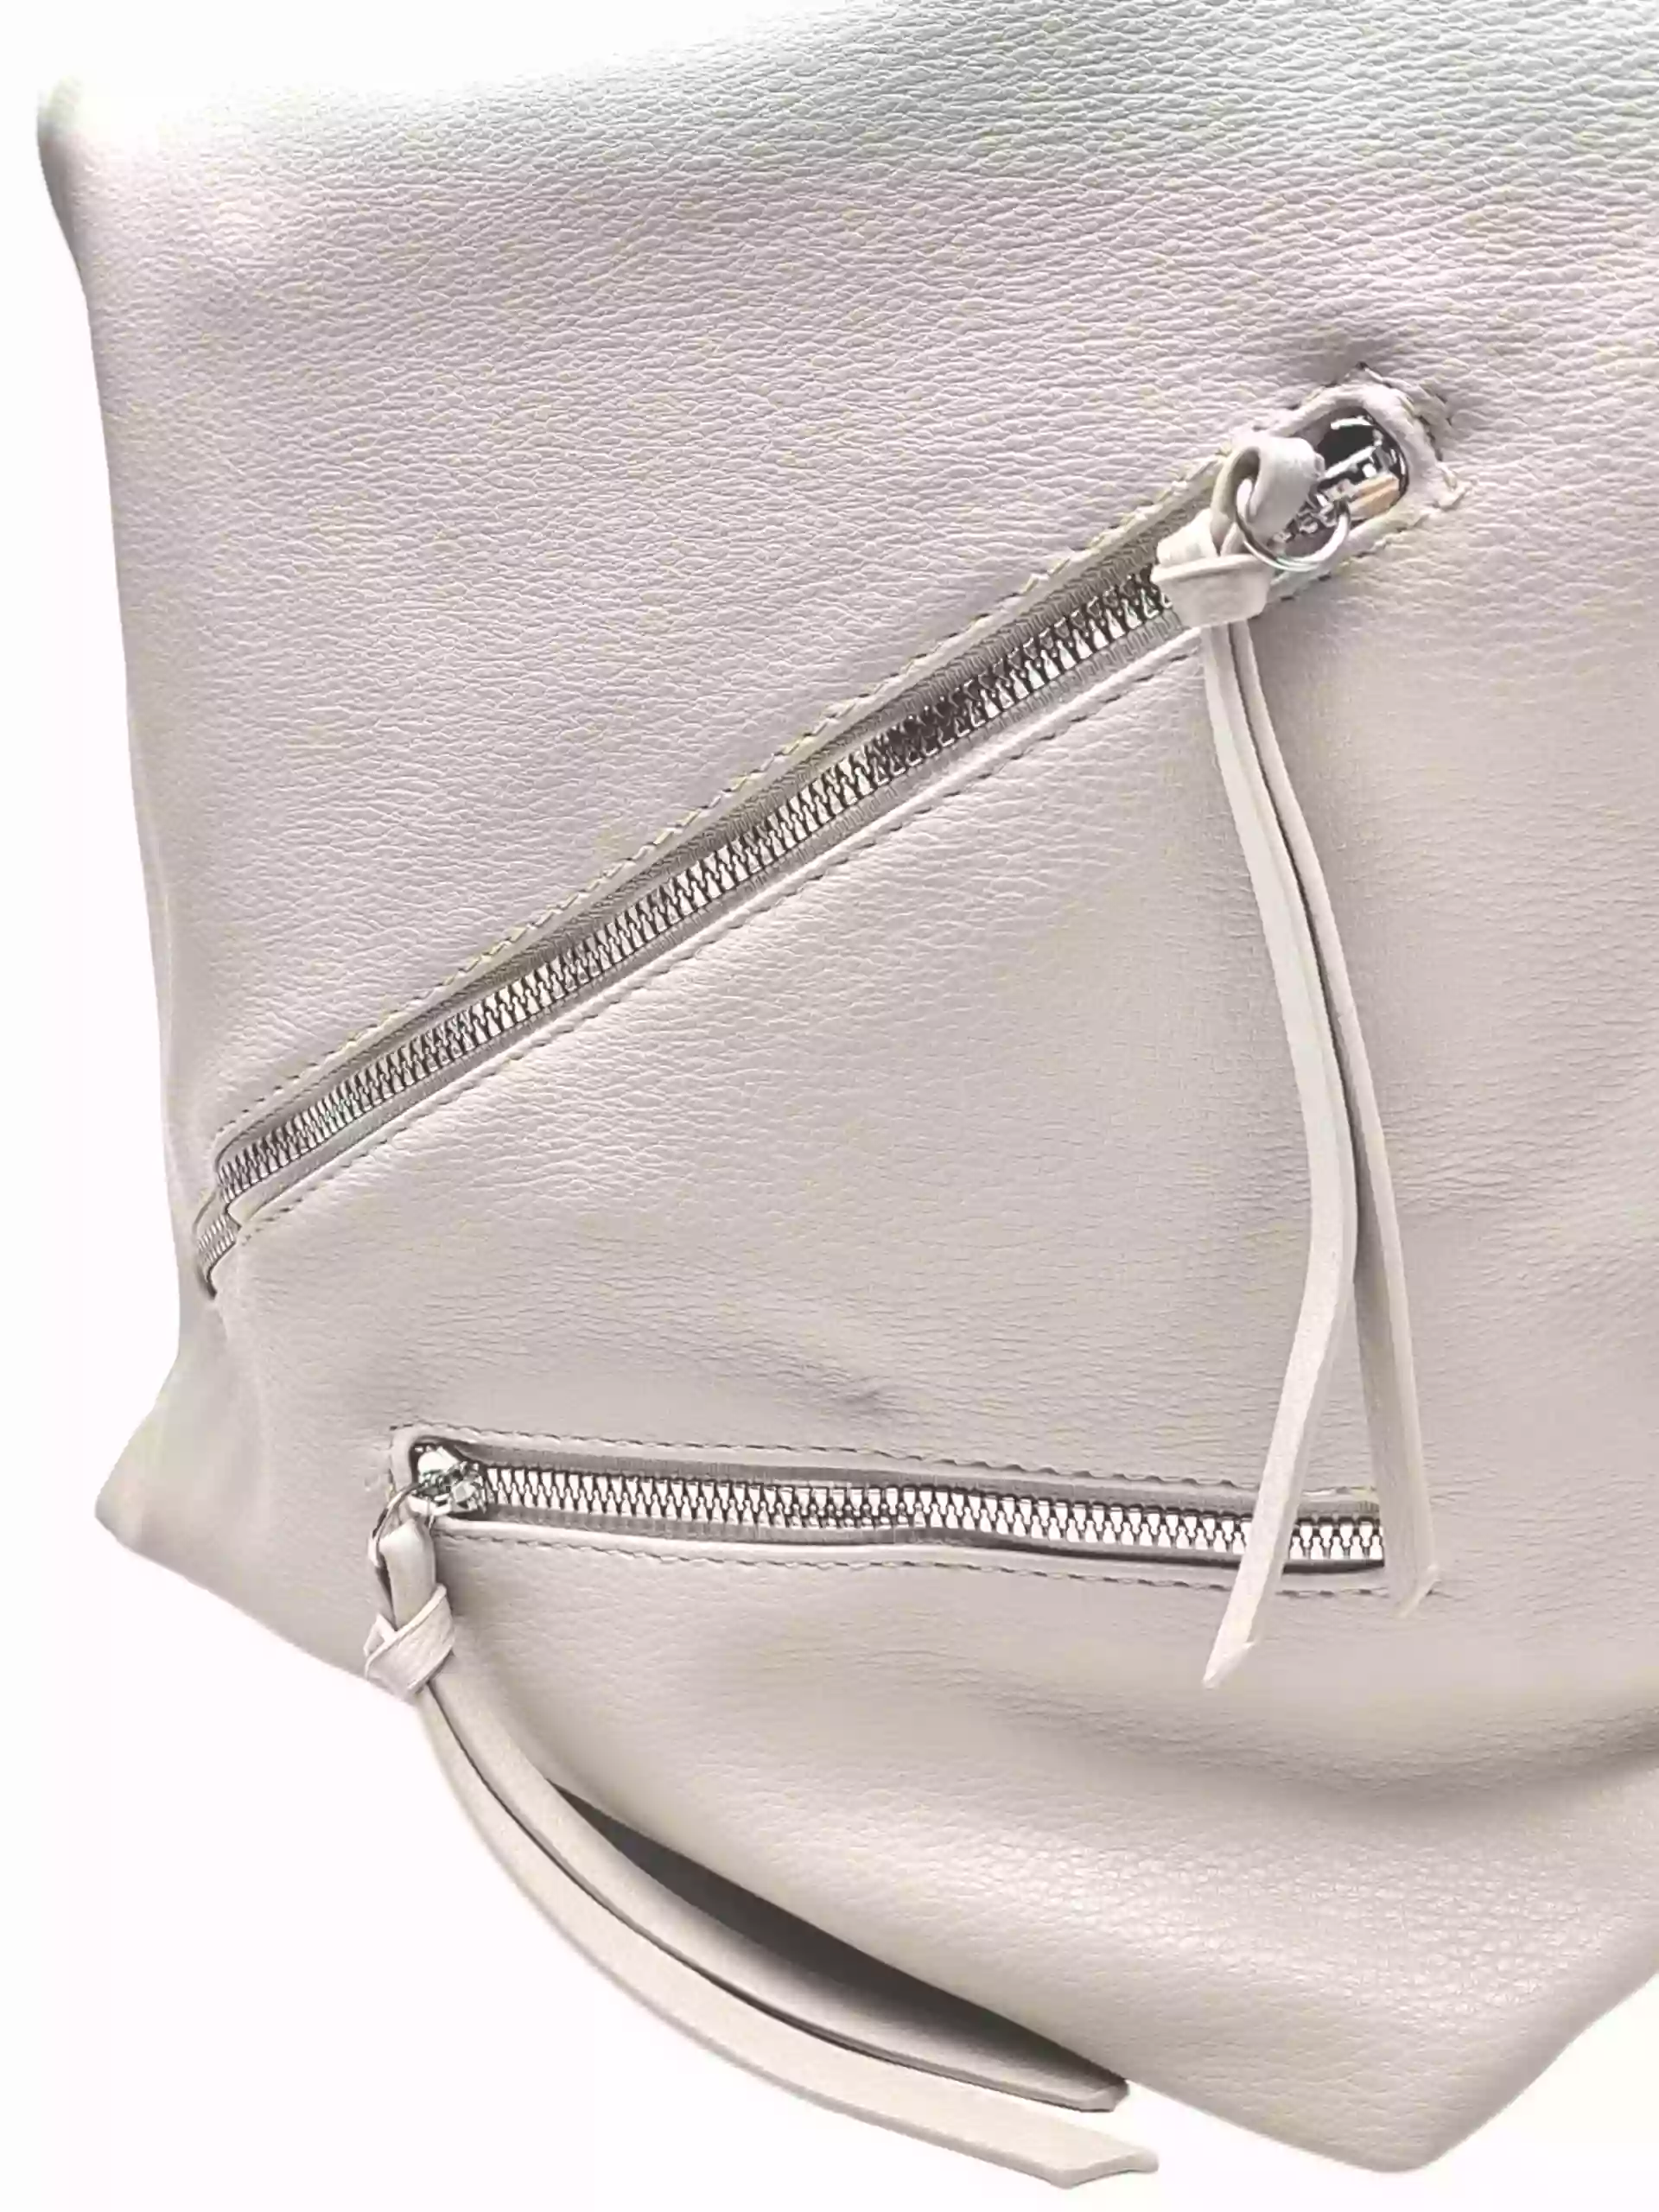 Velká perleťově bílá kabelka a batoh v jednom, Tapple, X368, detail kabelko-batohu 2v1